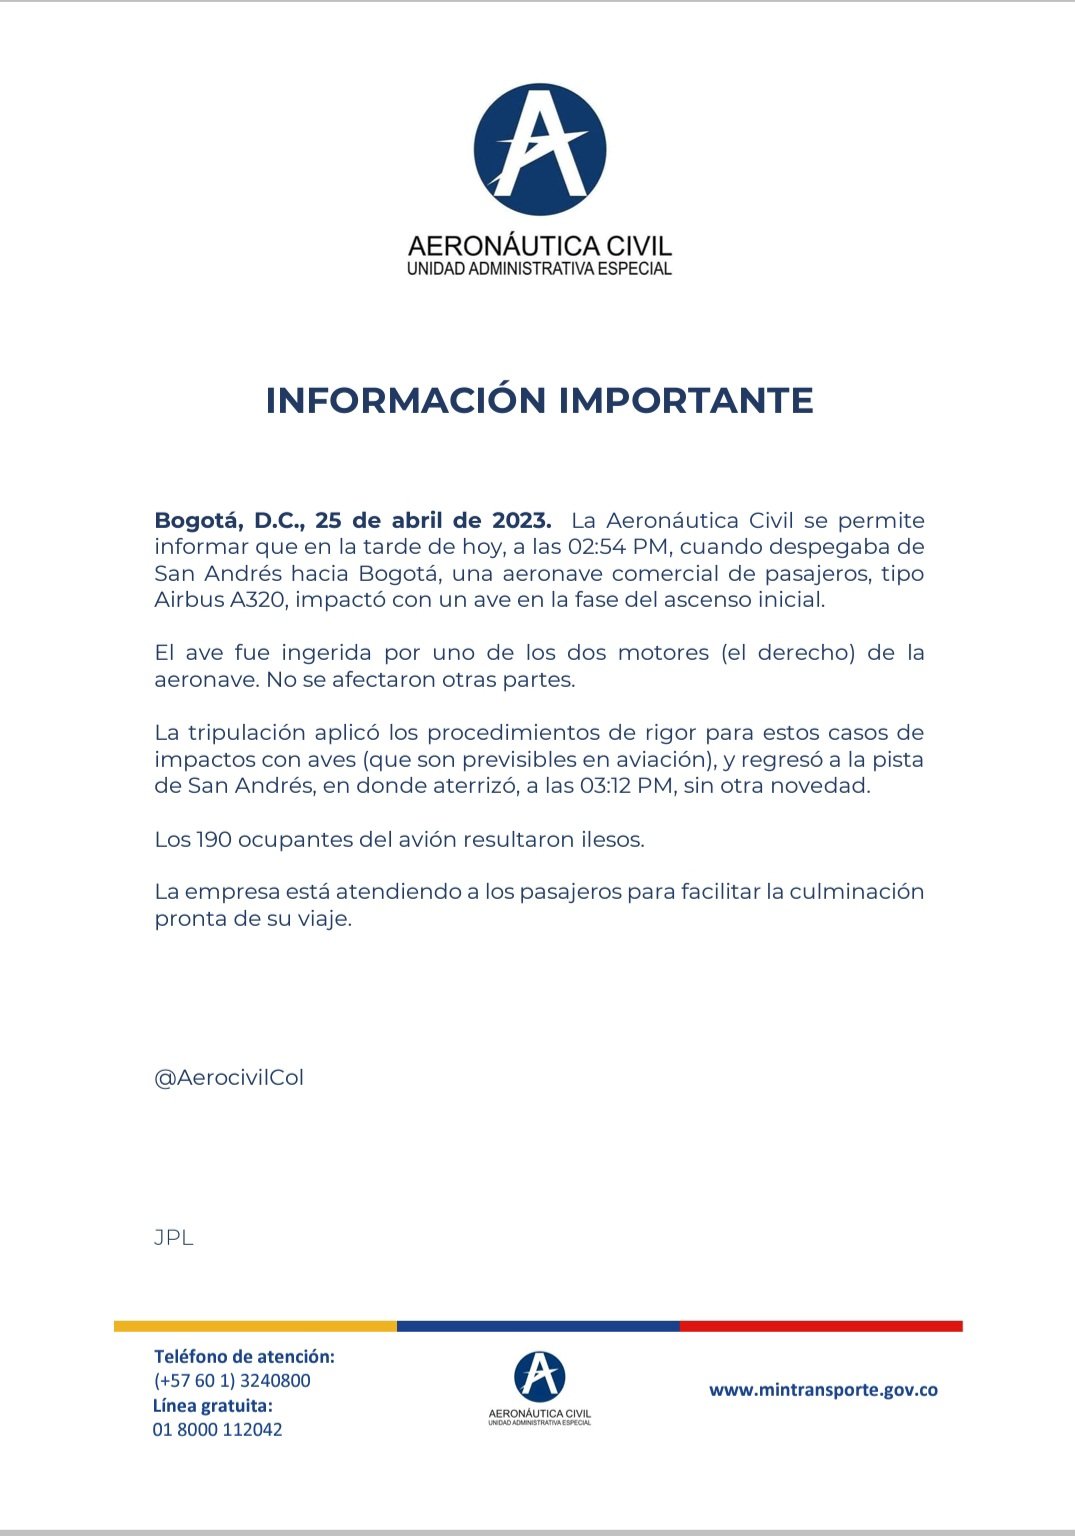 Comunicado a la opinión pública sobre incidente de aeronave en el Aeropuerto de San Andrés por impacto de ave. Cortesía 
Aeronáutica Civil de Colombia.